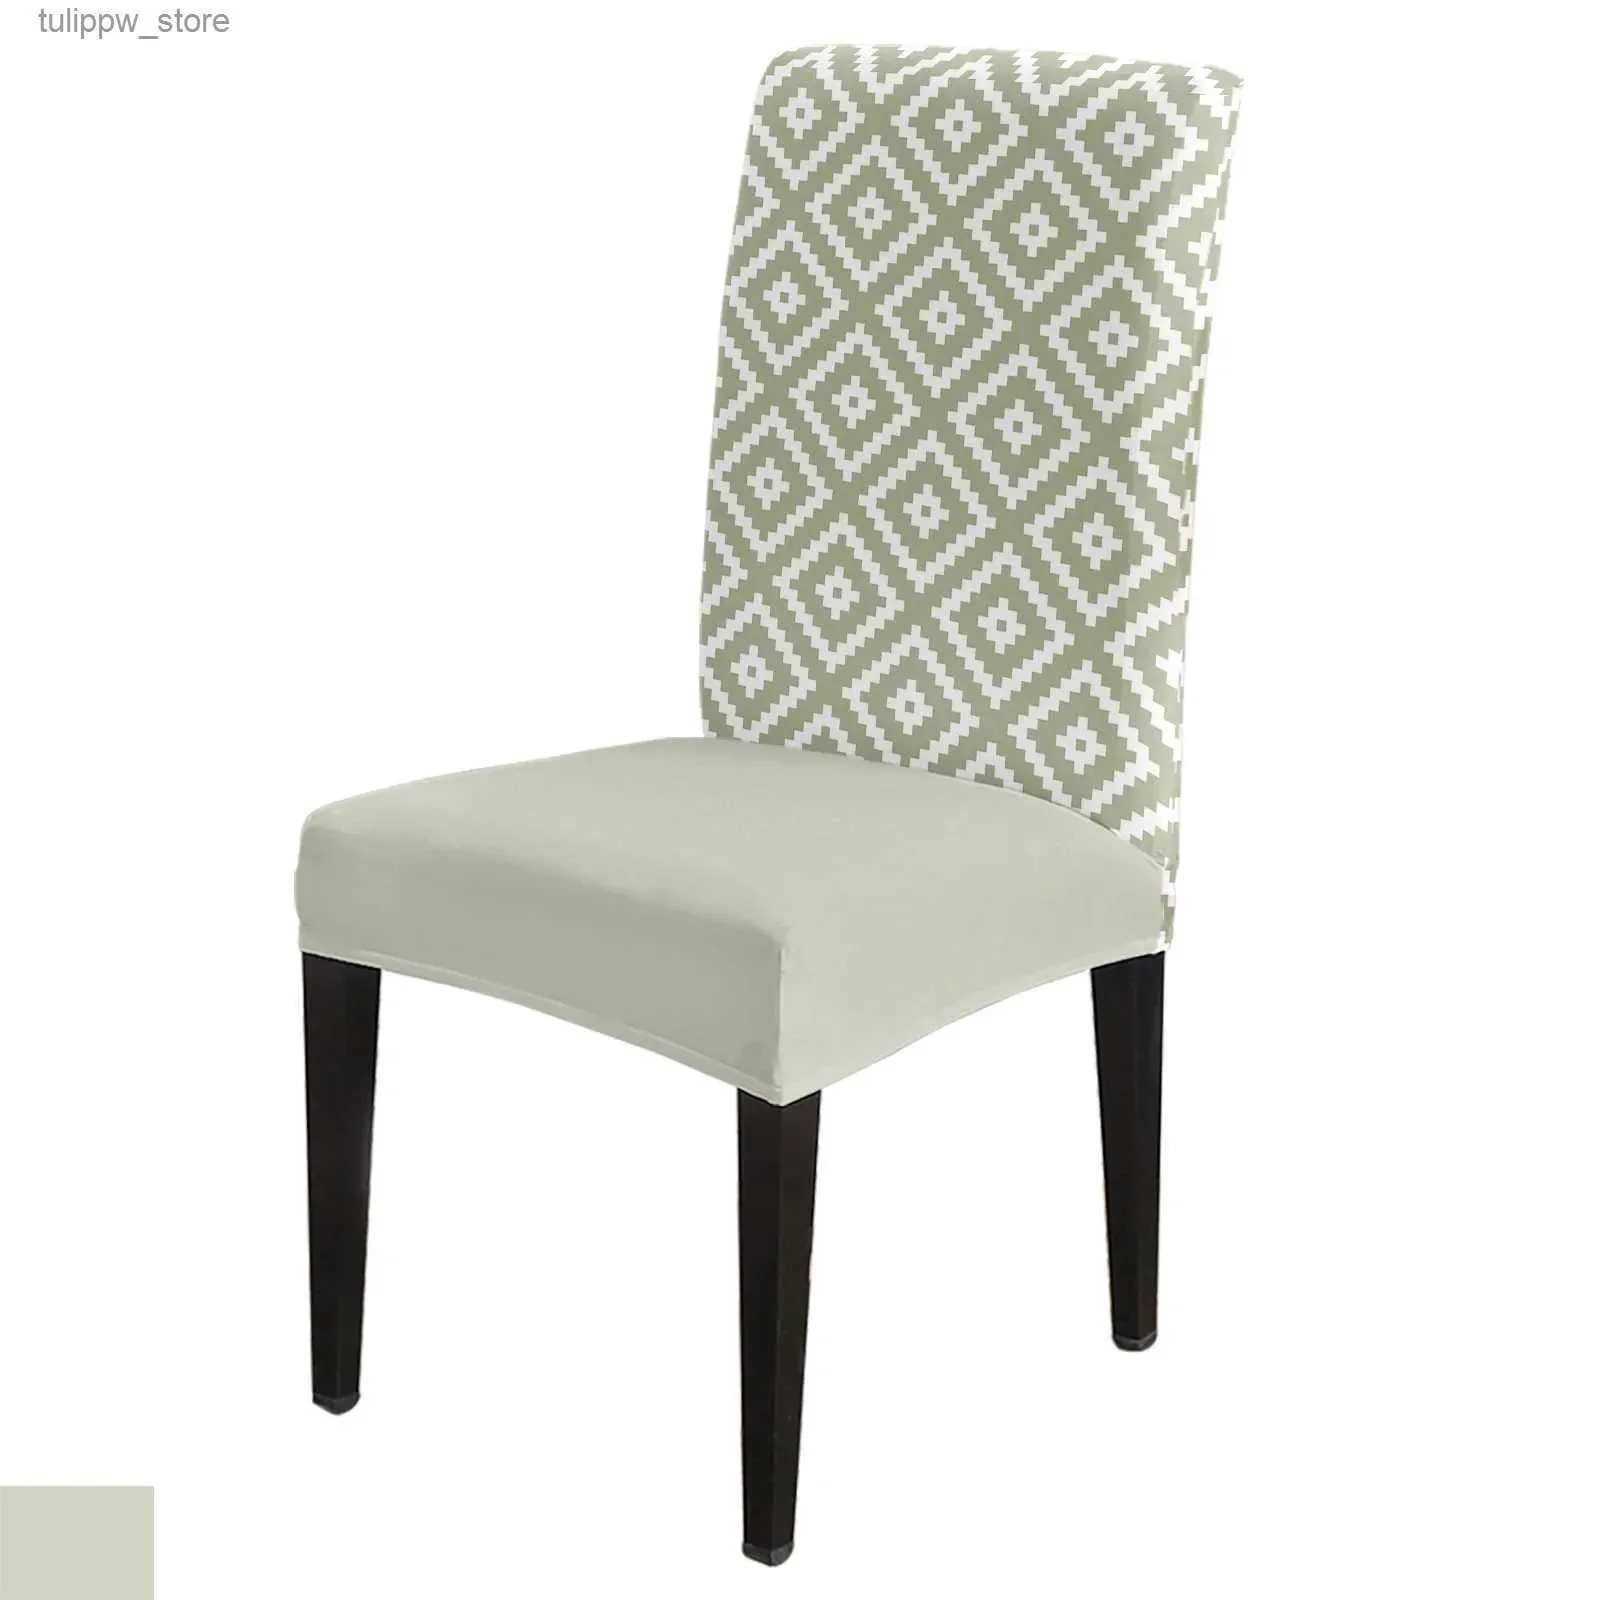 Fundas para sillas Funda para silla con textura cuadrada geométrica, color verde salvia, para asiento de cocina, fundas para sillas de comedor, fundas elásticas para banquete, hotel, hogar L240315